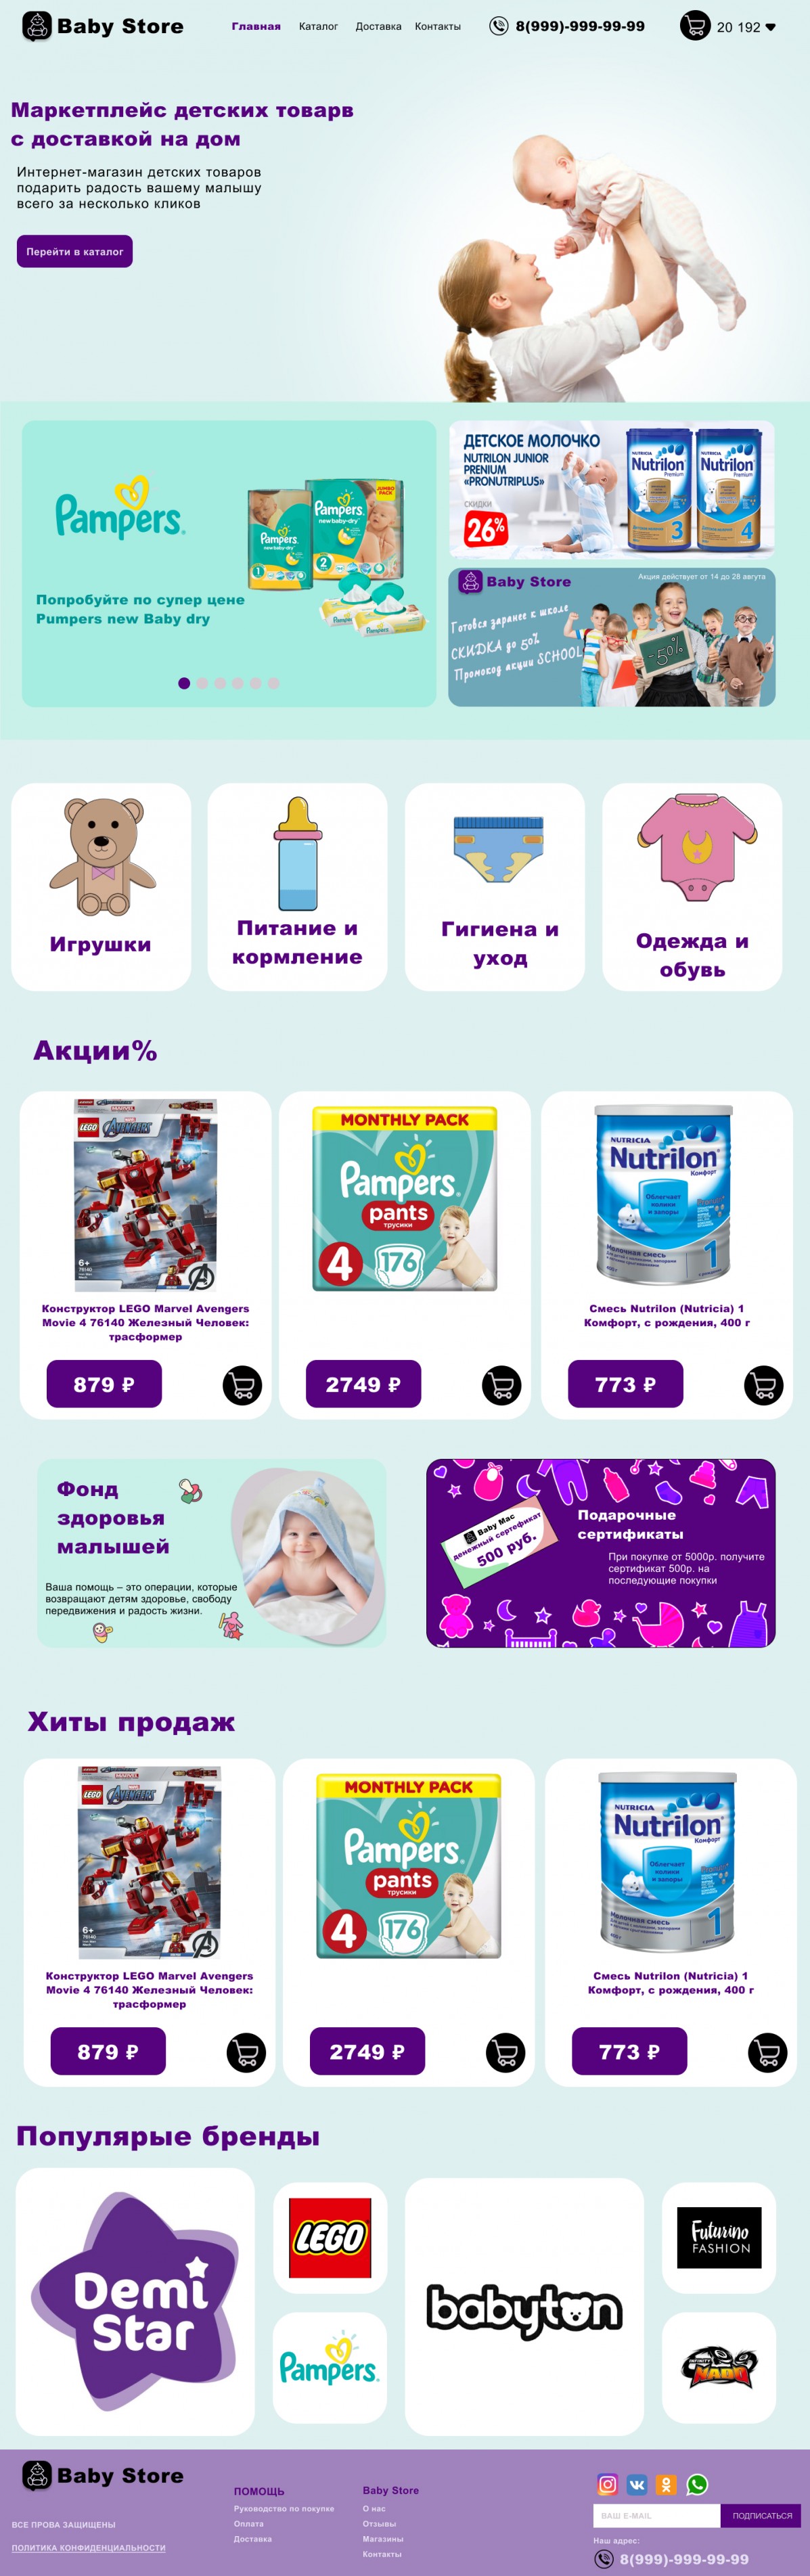 Figma online store baby goods